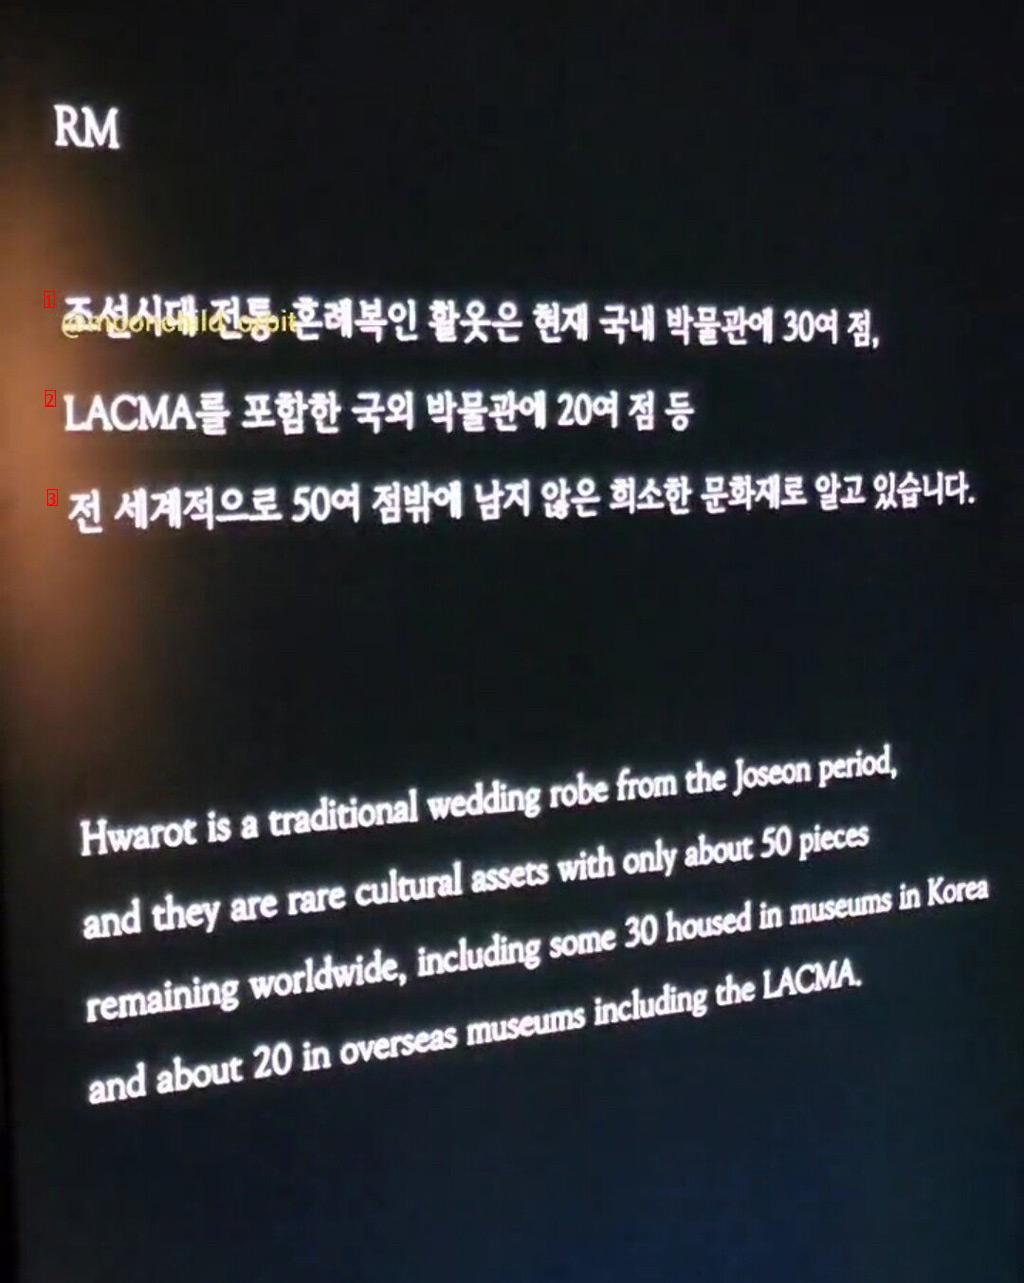 방탄소년단 RM의 기부로 복원한 문화재